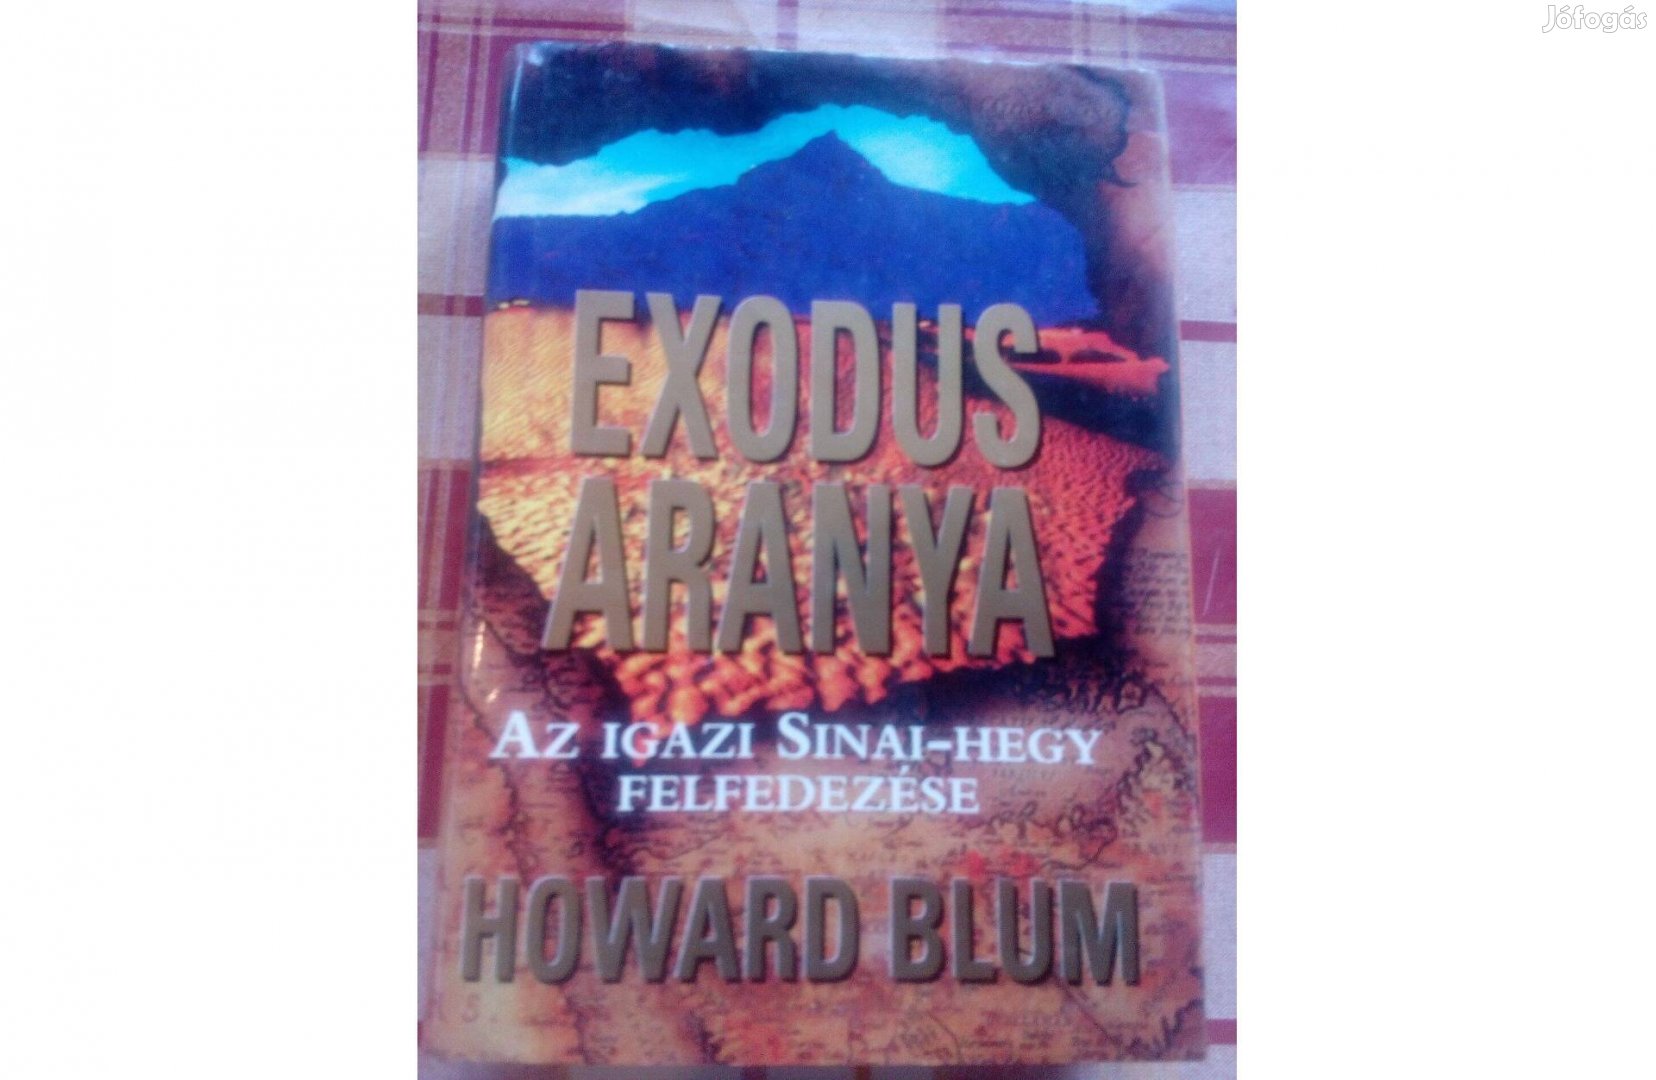 Howard Blum Exodus aranya az igazi Sinai-hegy felfedezése c. könyv